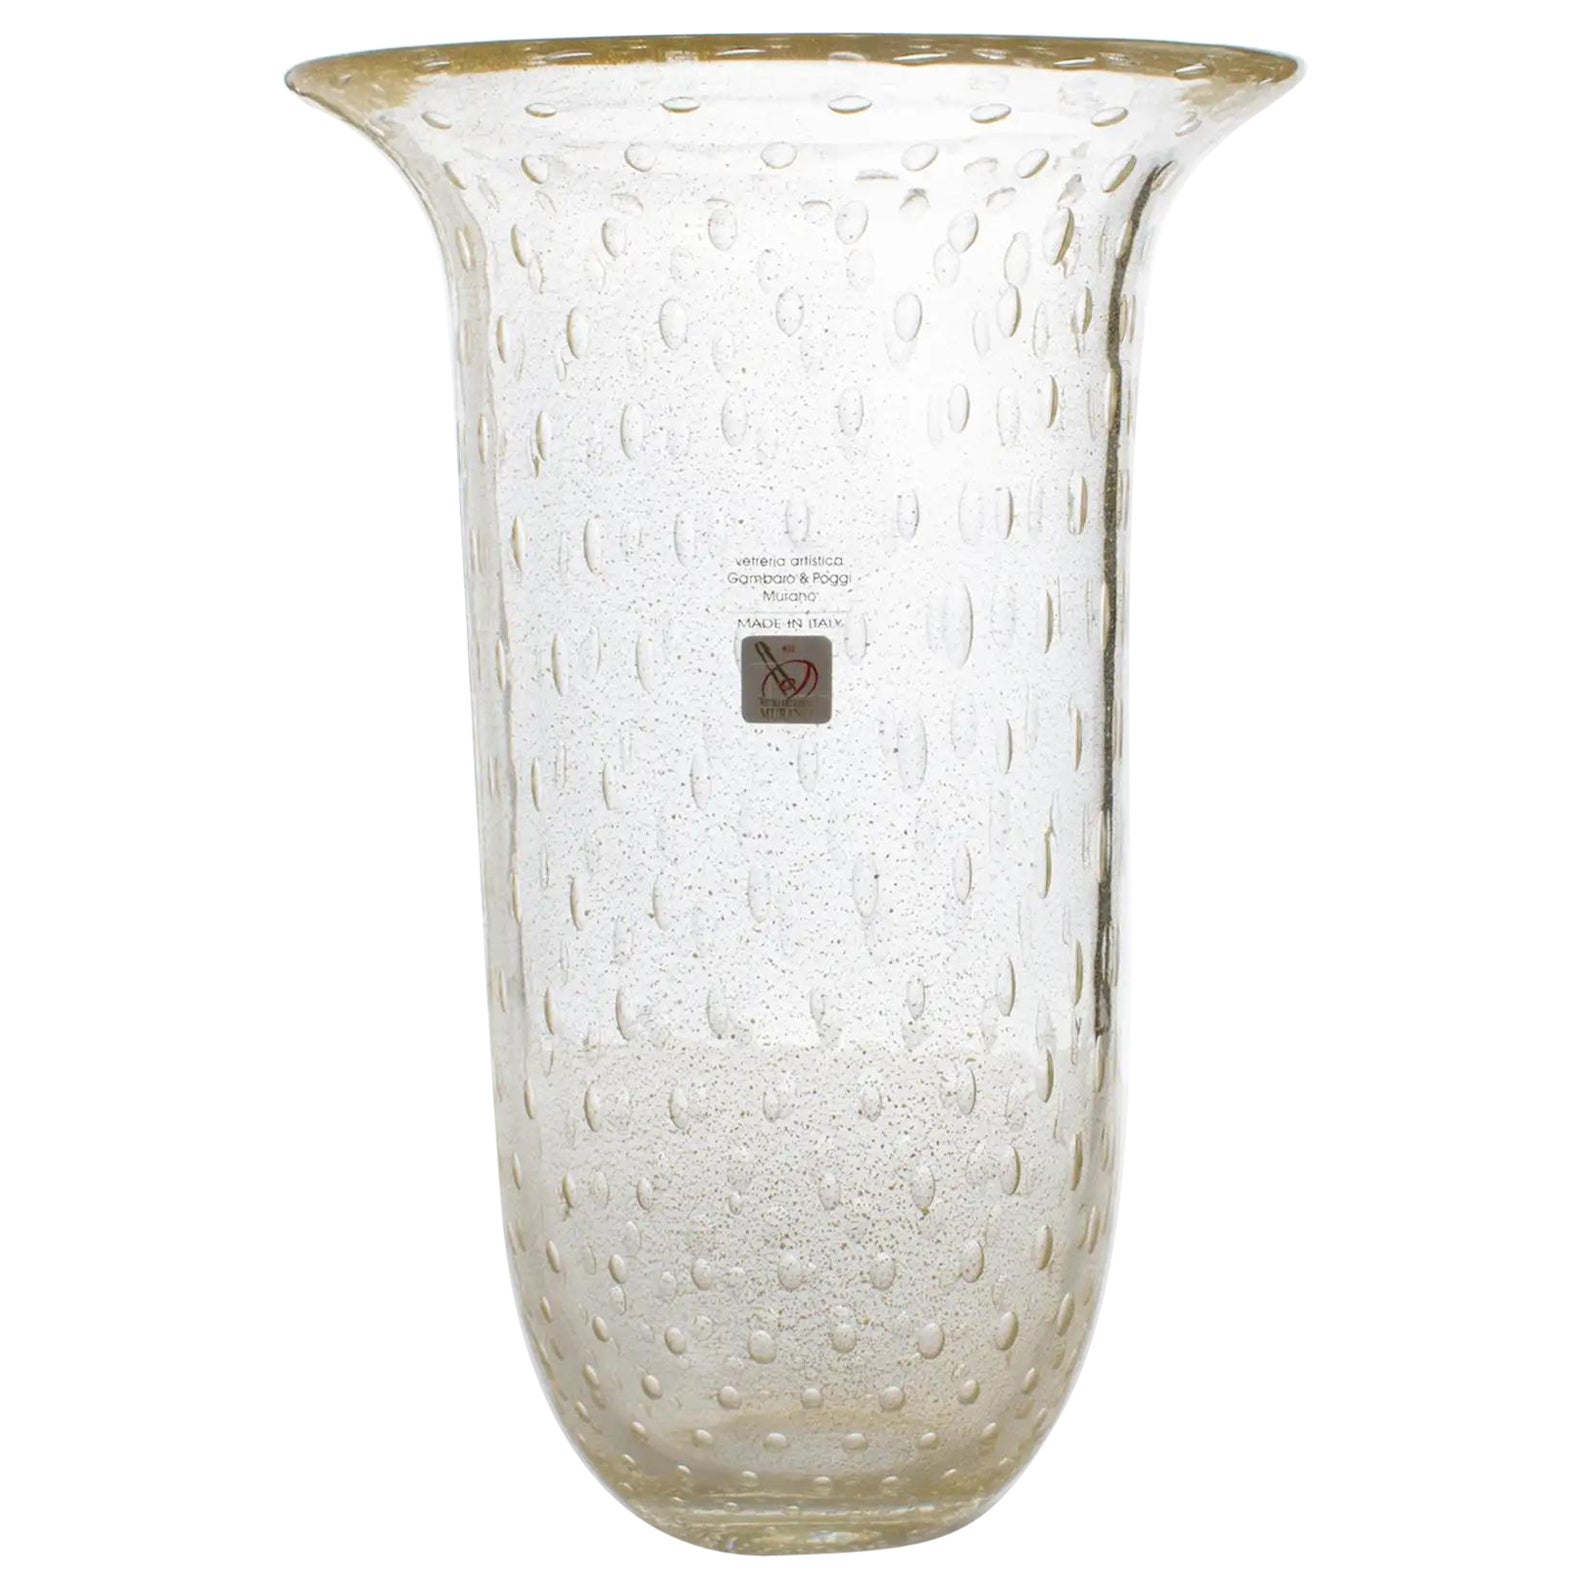 Italian Art Glass Murano Vase Gold Flakes and Bubbles by Gambaro & Poggi For Sale